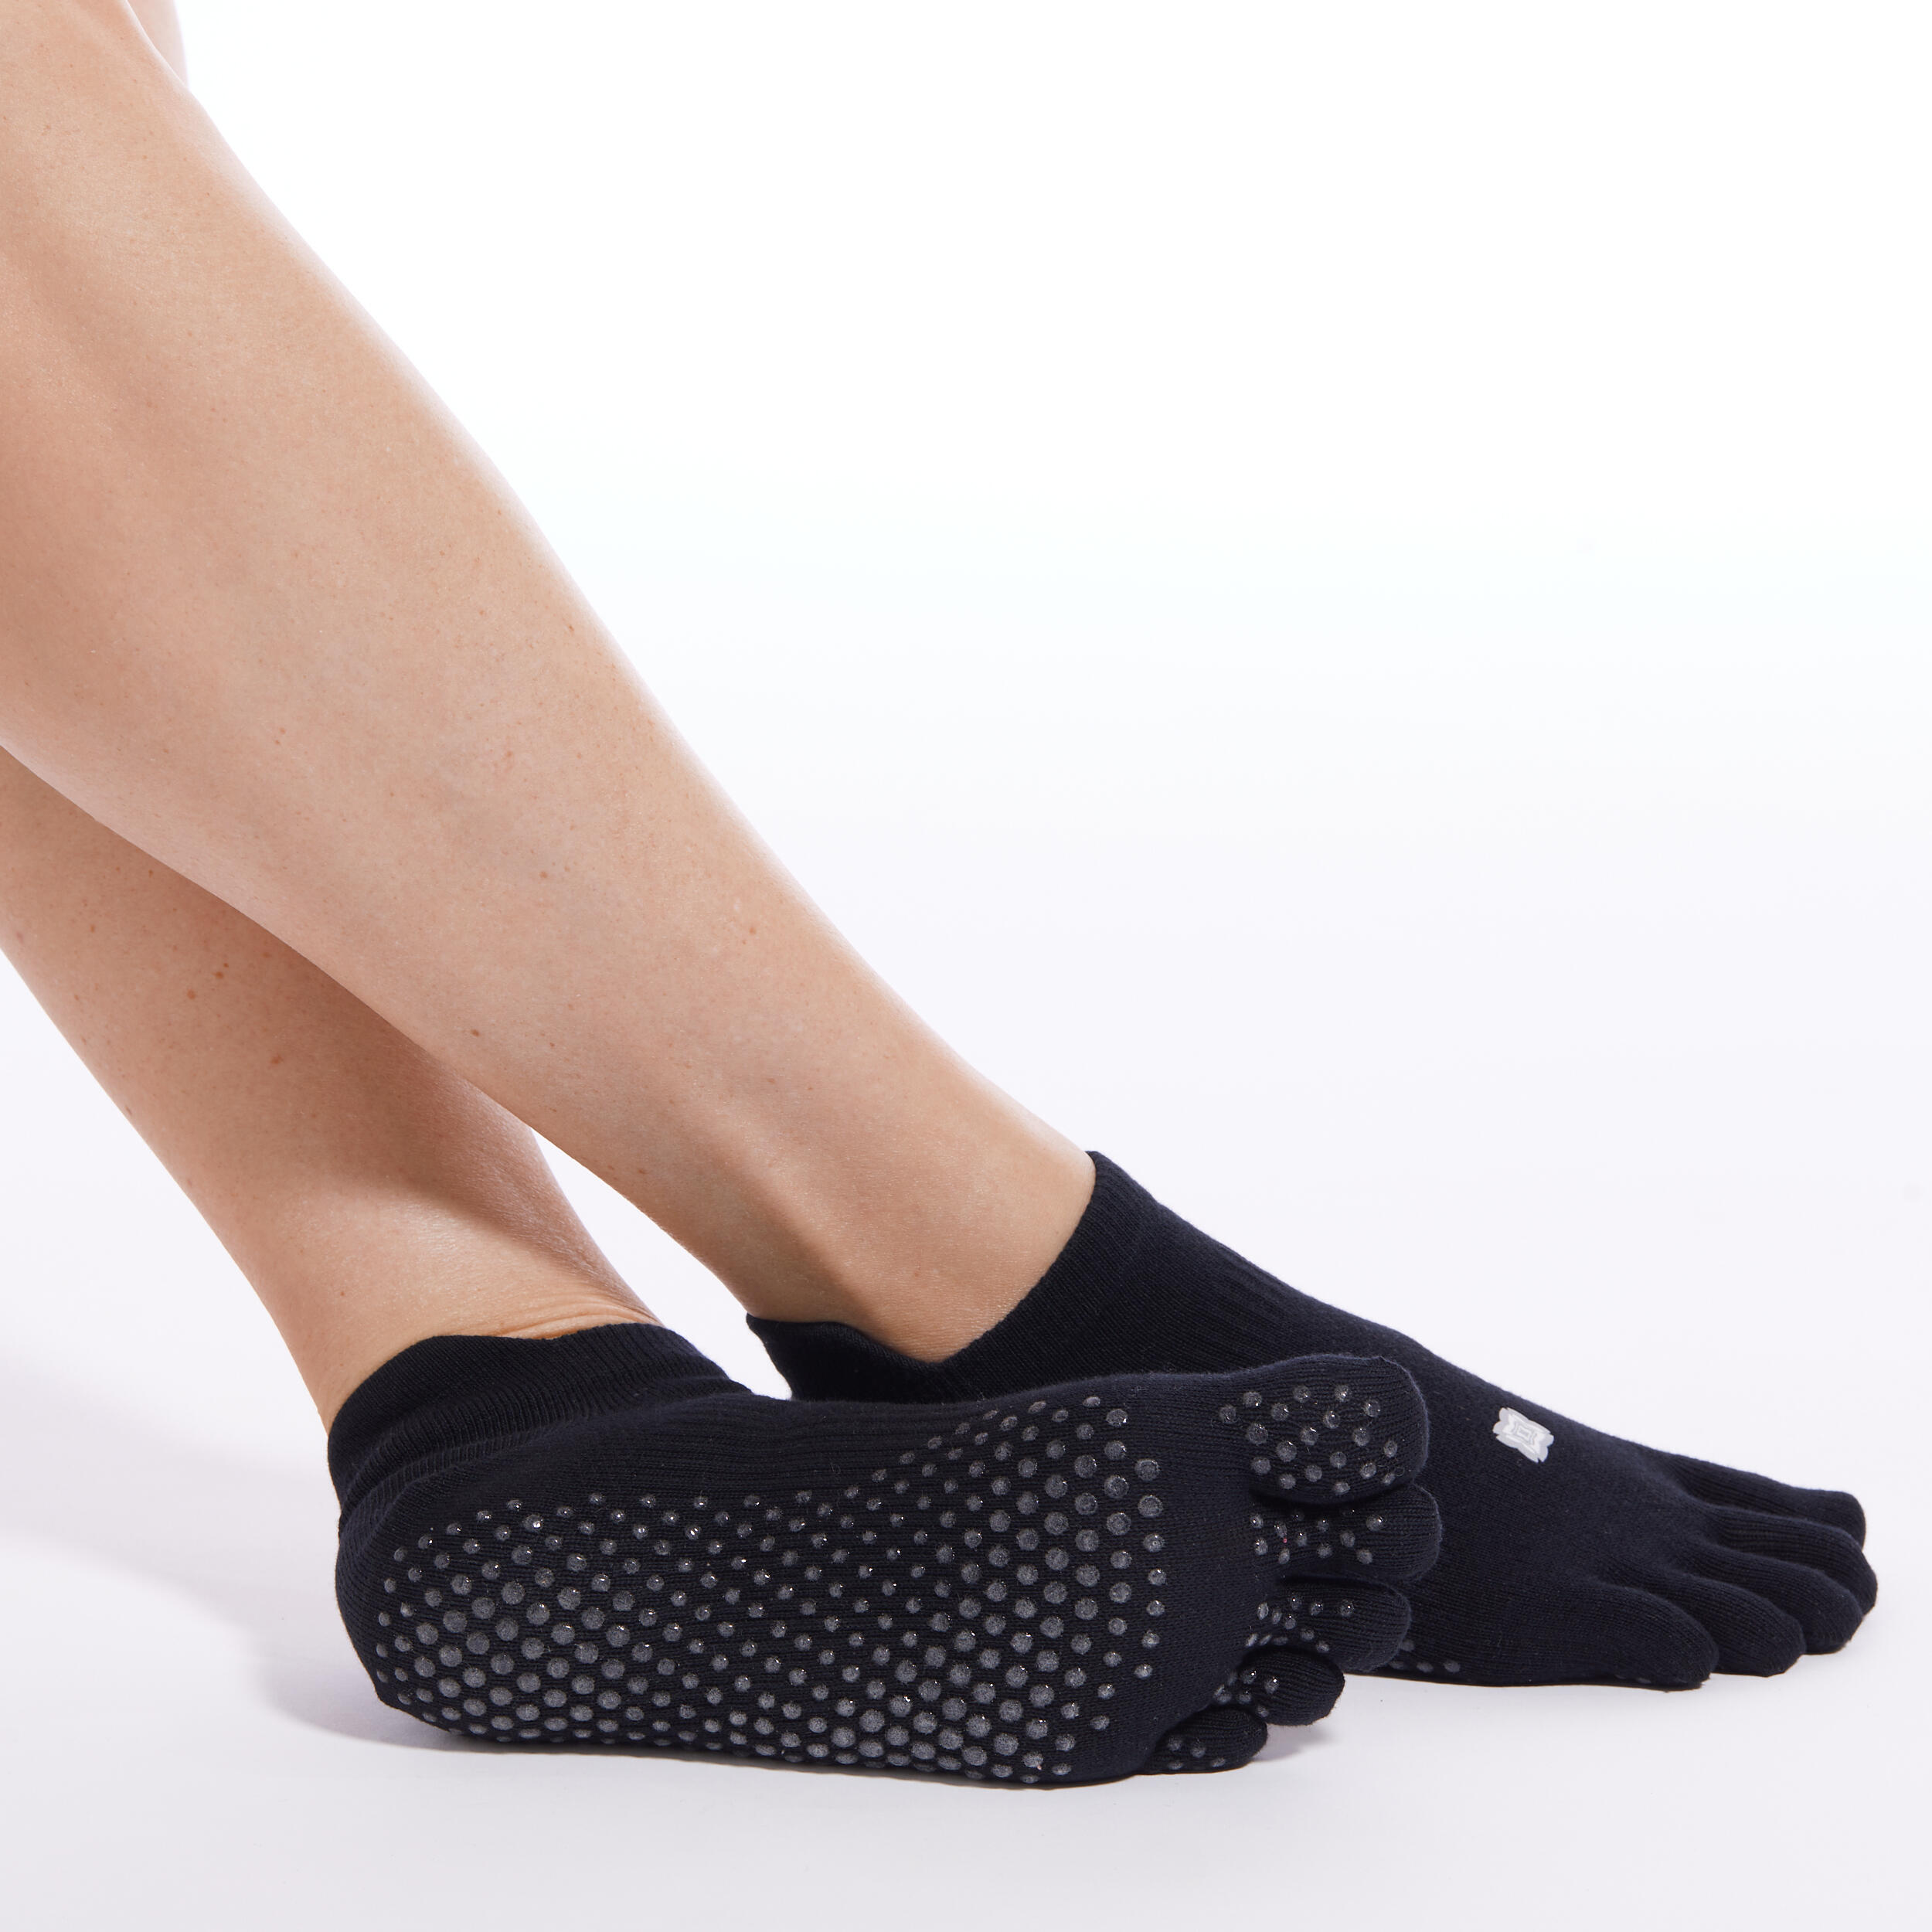 Women's Non-Slip Cotton Ballet Fitness Socks 500 - Black - Decathlon